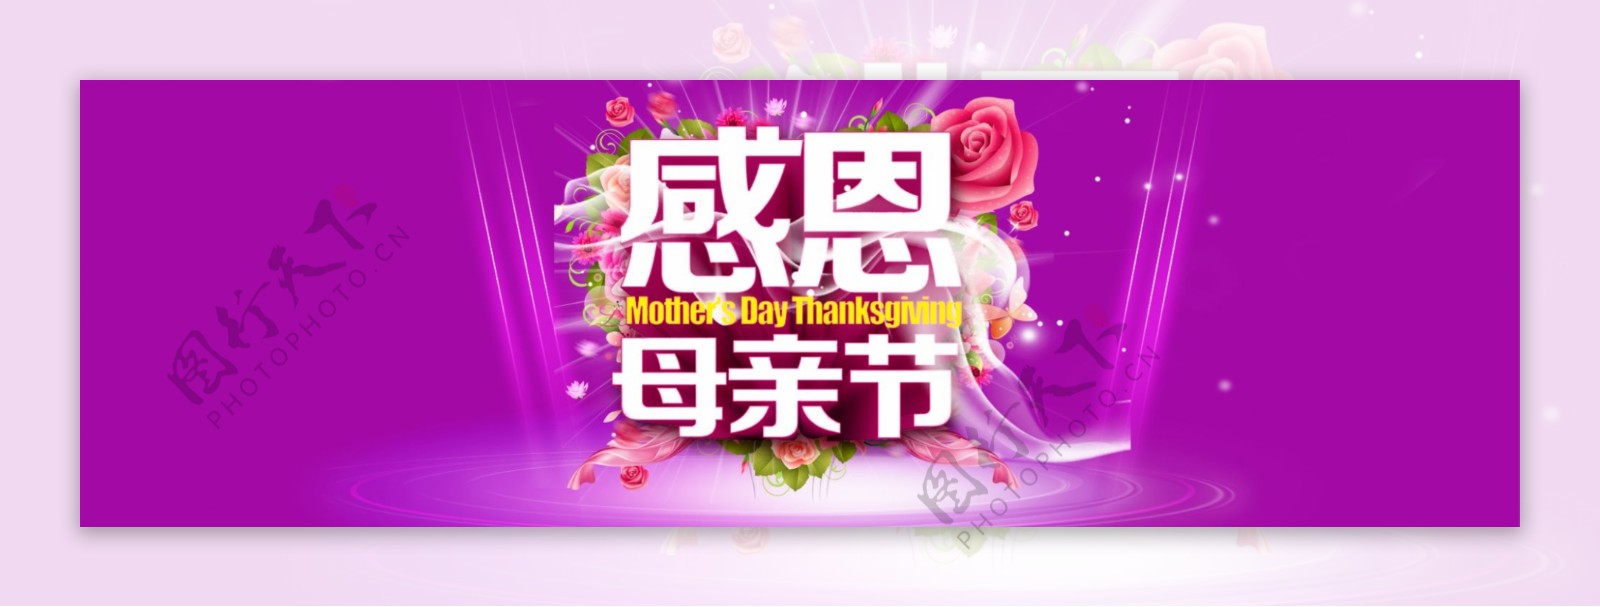 母亲节banner背景图